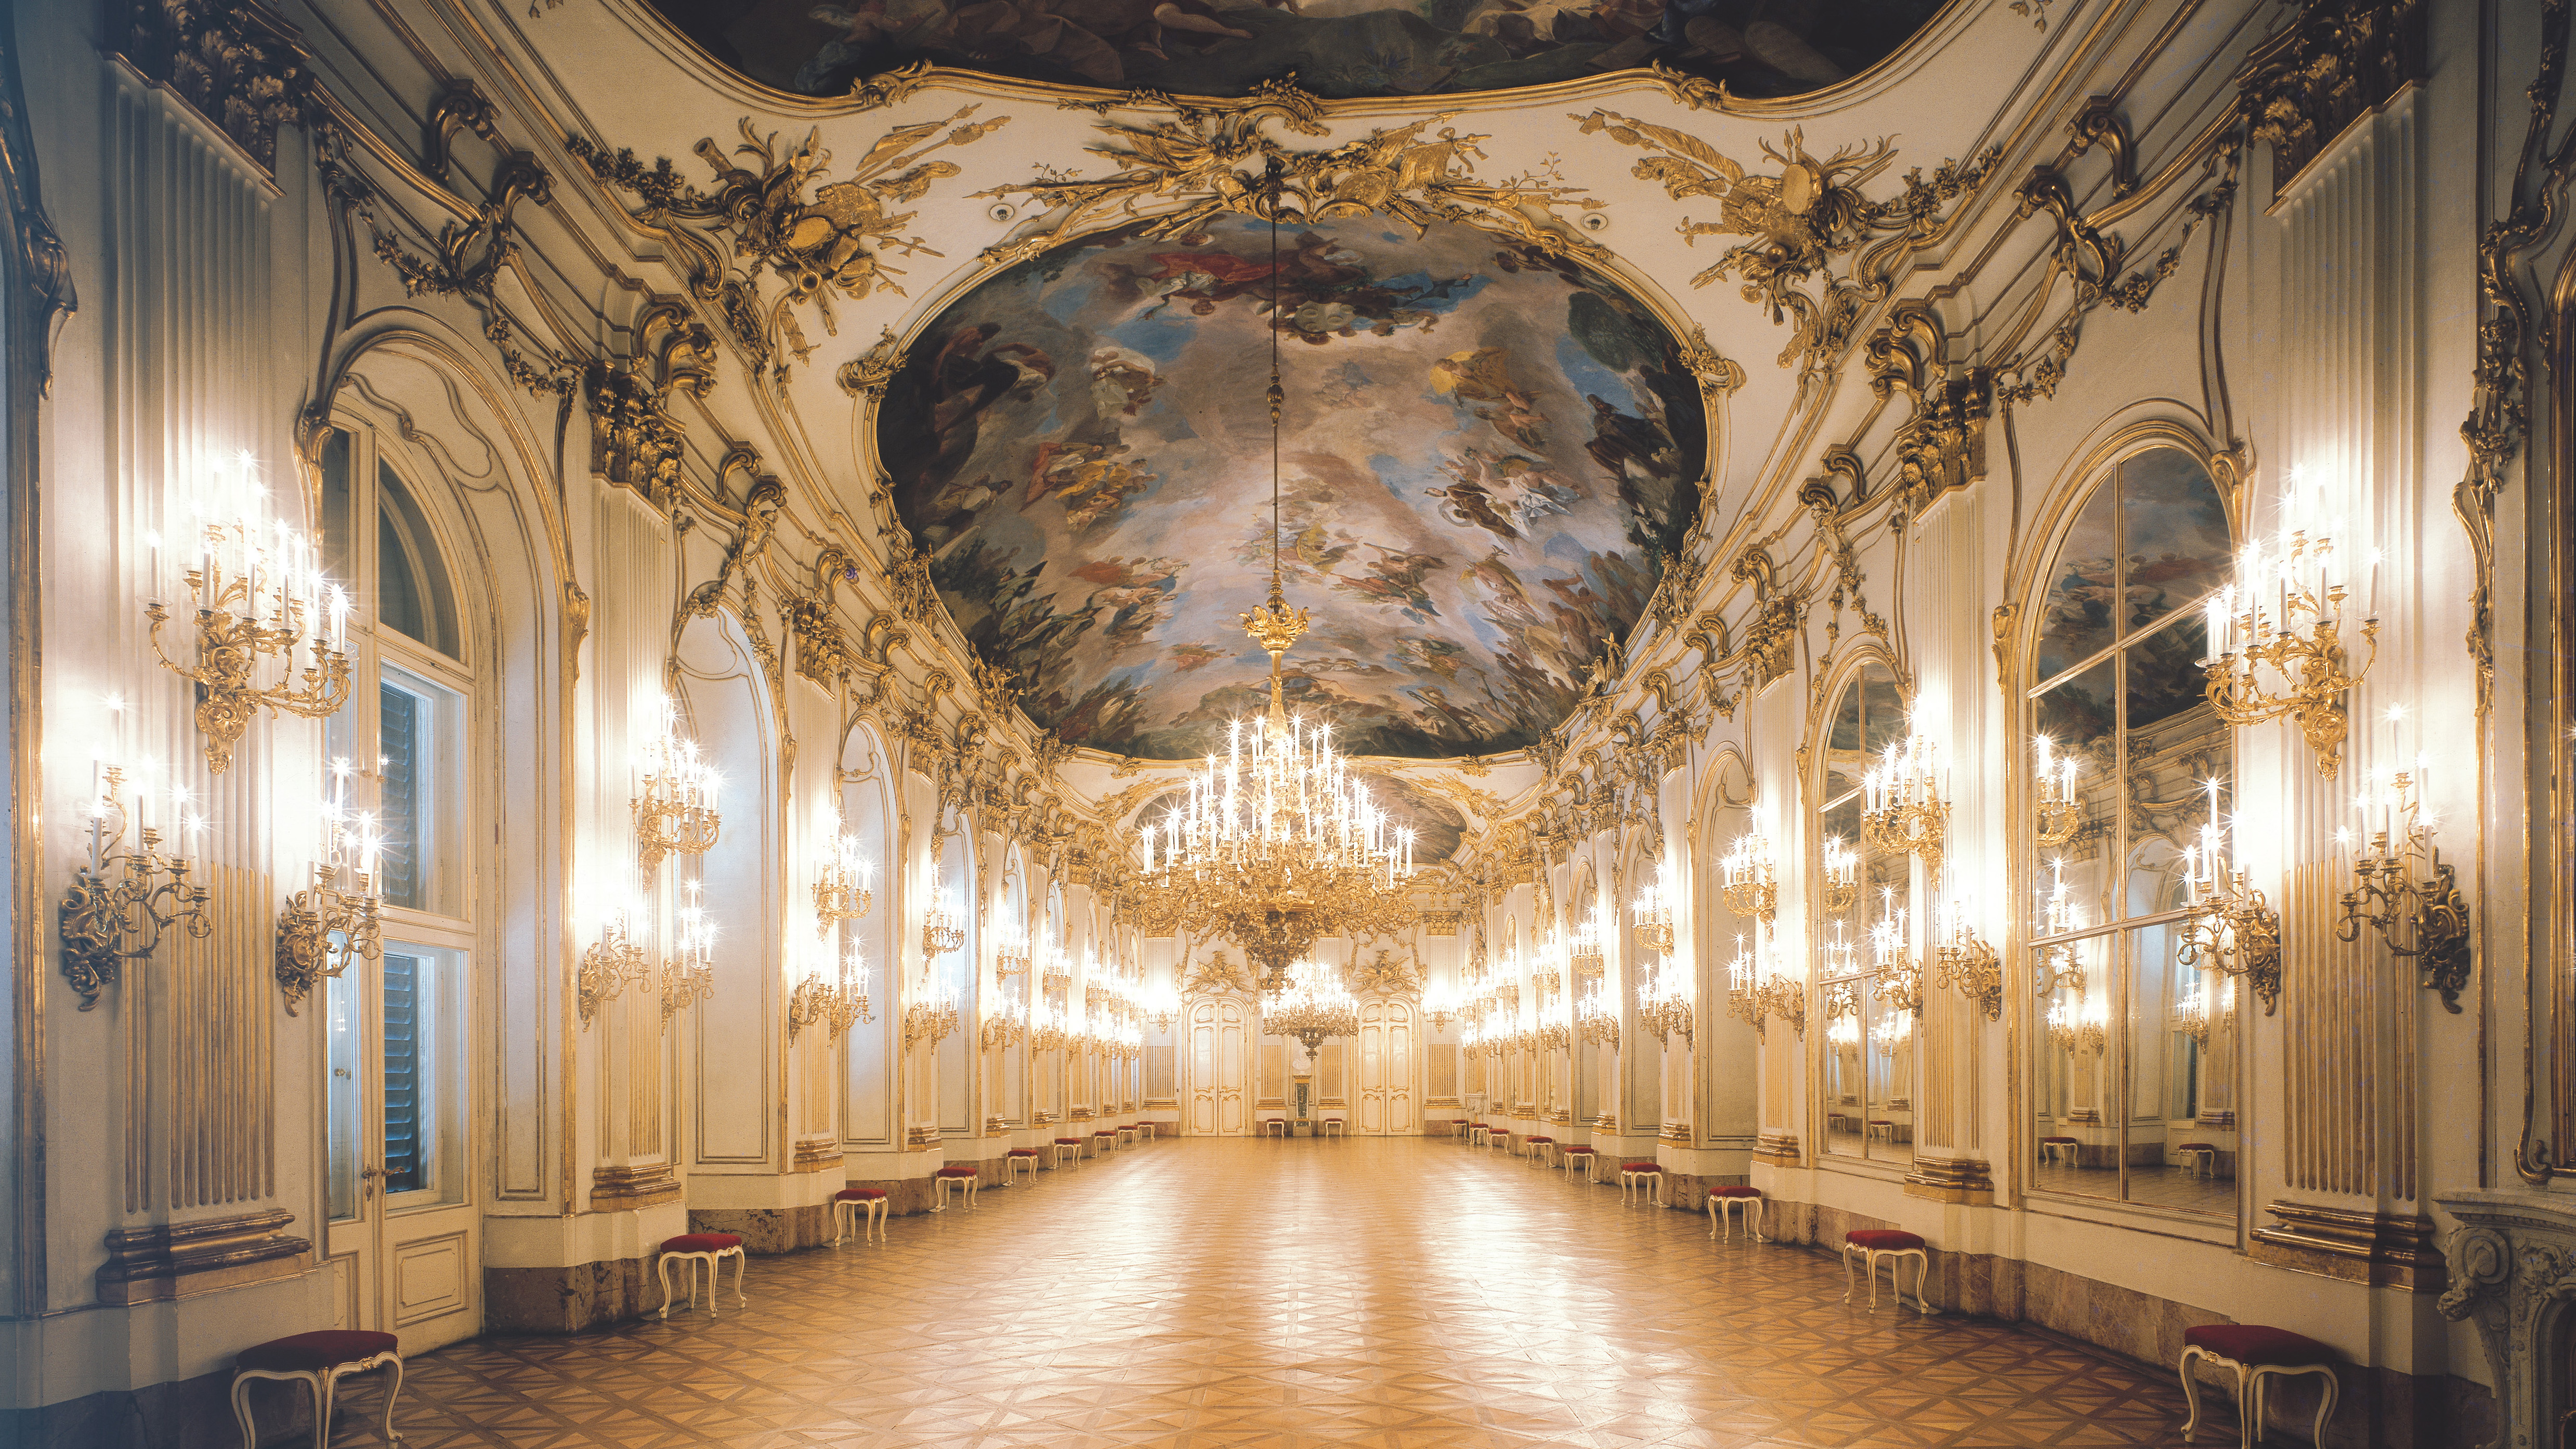 Innenansicht des Schlosses Schönbrunn: die prunkvolle Große Galerie wird von einem großen Kronleuchter in der Mitte und von vielen kleinen am Gang hell erleuchtet. 